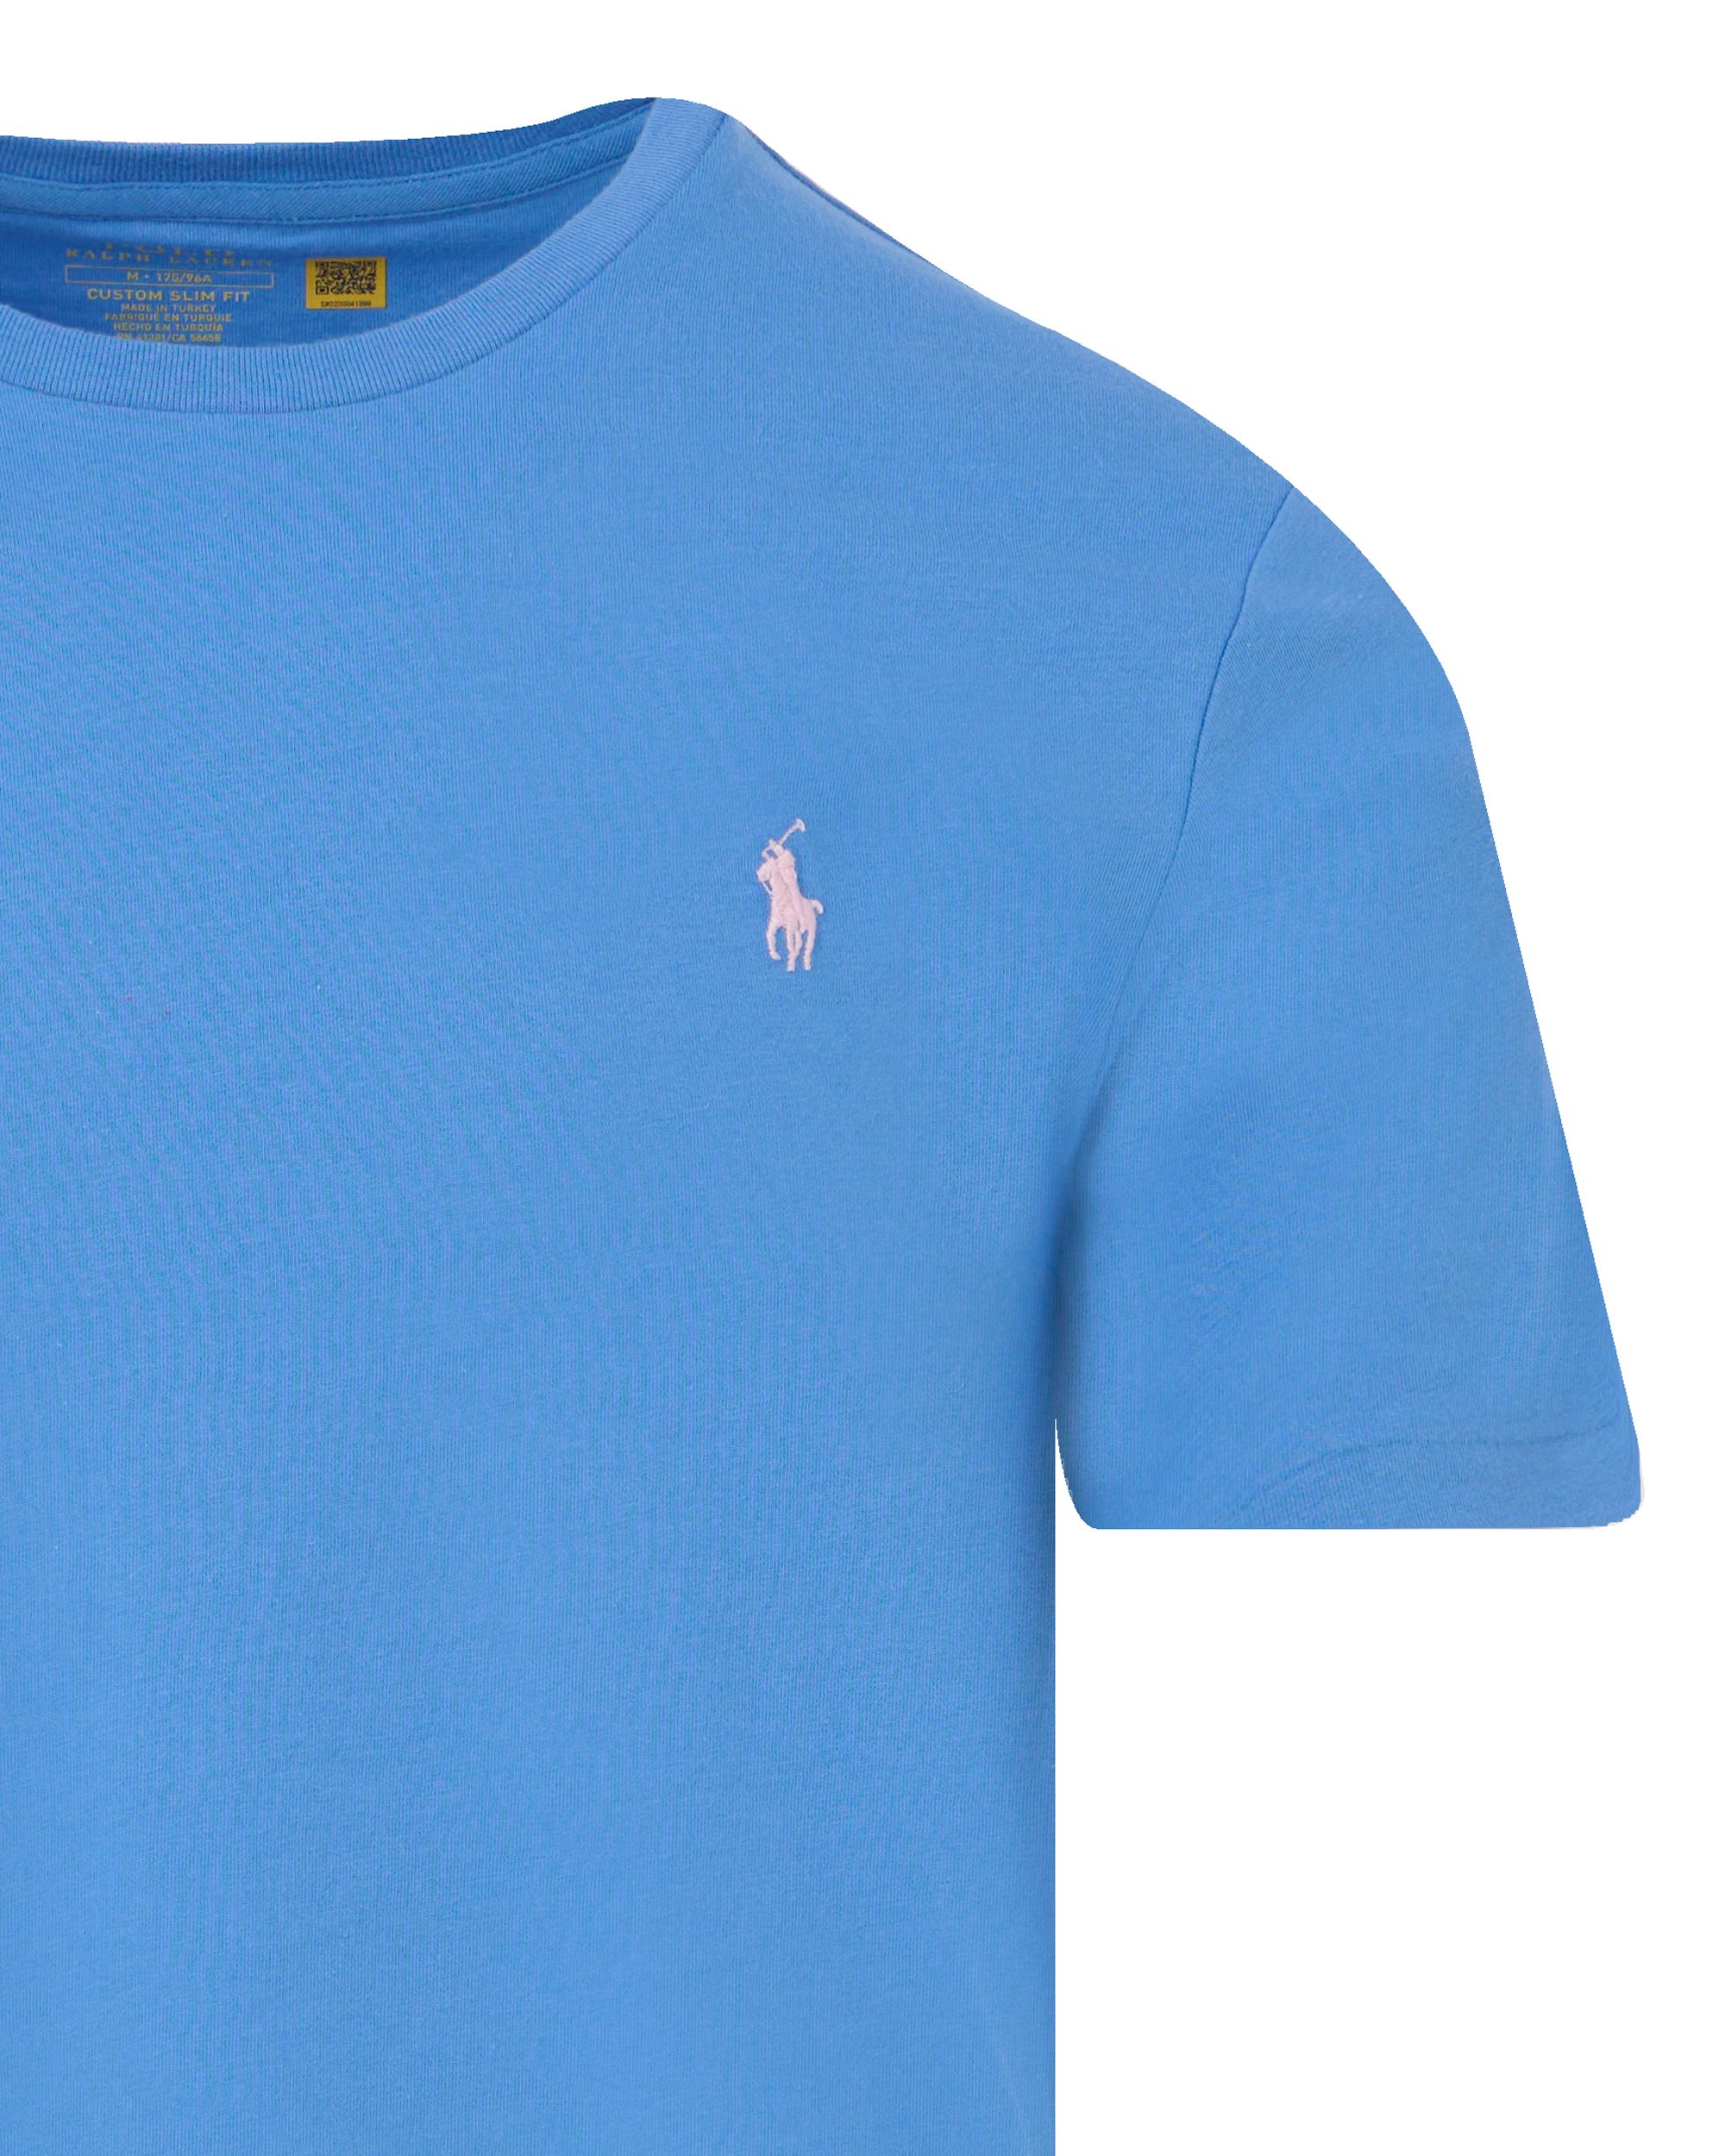 Polo Ralph Lauren T-shirt KM Blauw 095284-001-L